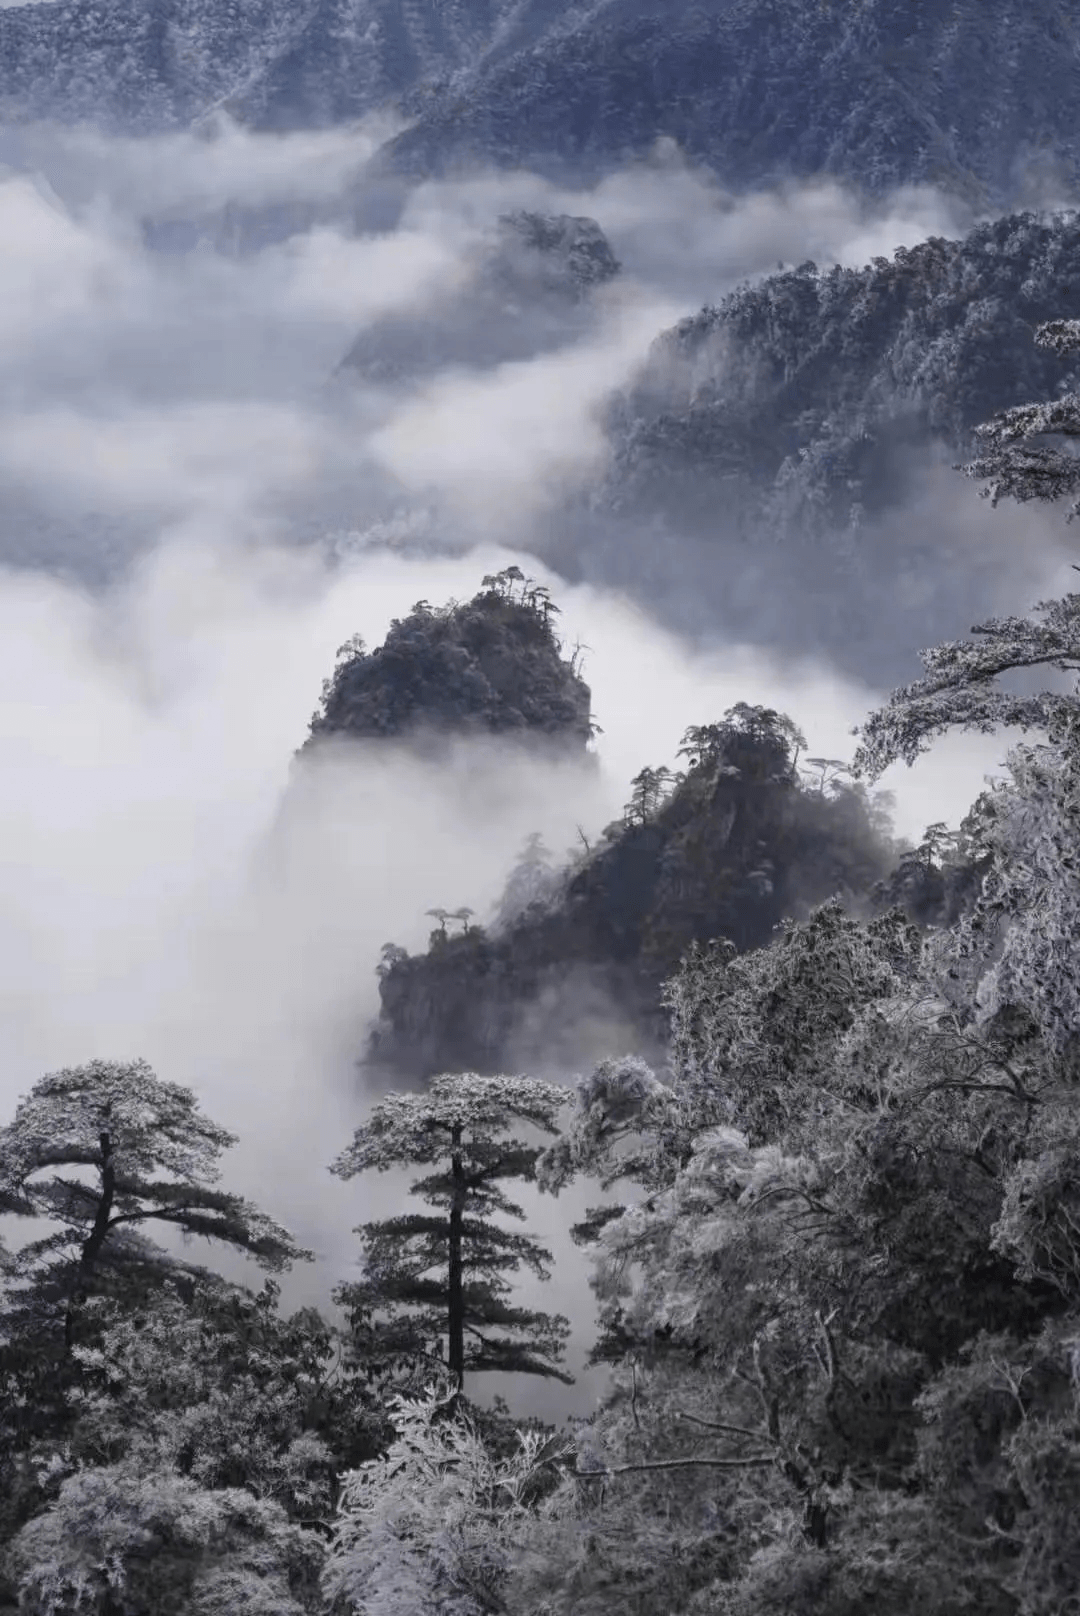 在最冷的冬日，邂逅最美的雾凇，2021莽山五指峰等你来玩